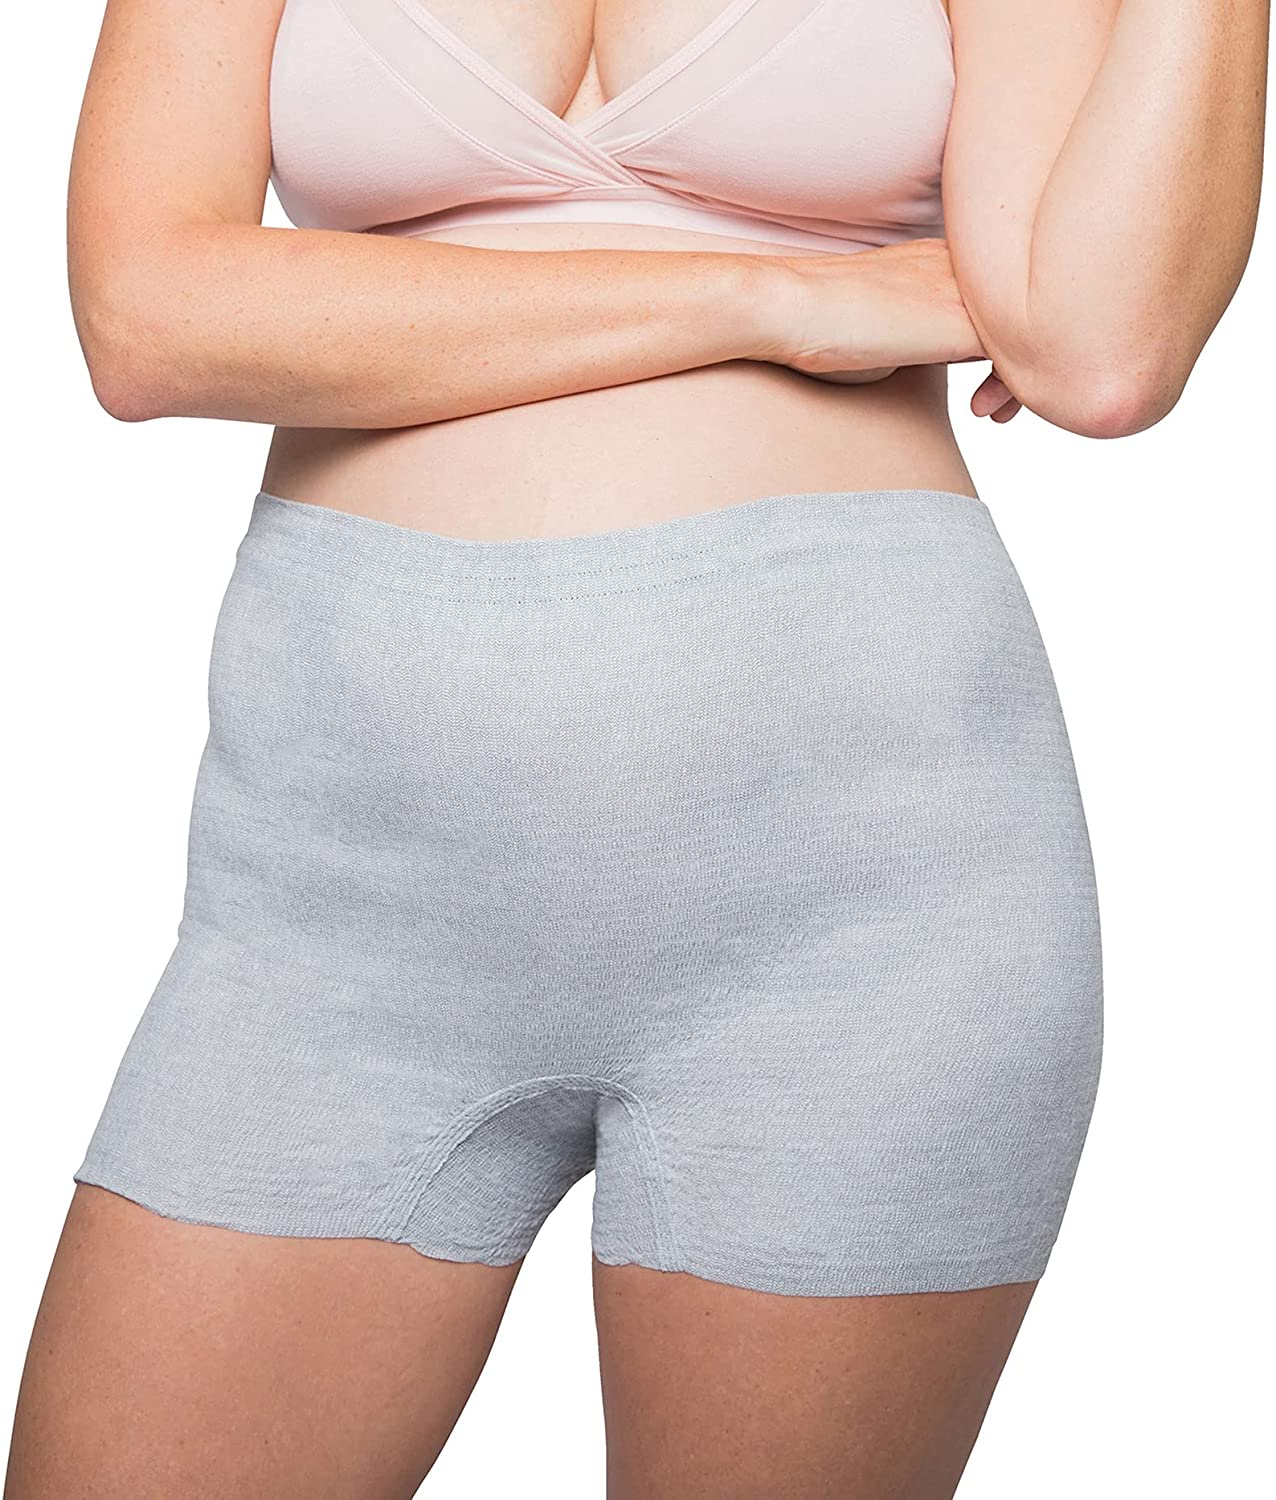 12 Best Postpartum Underwear for Comfort